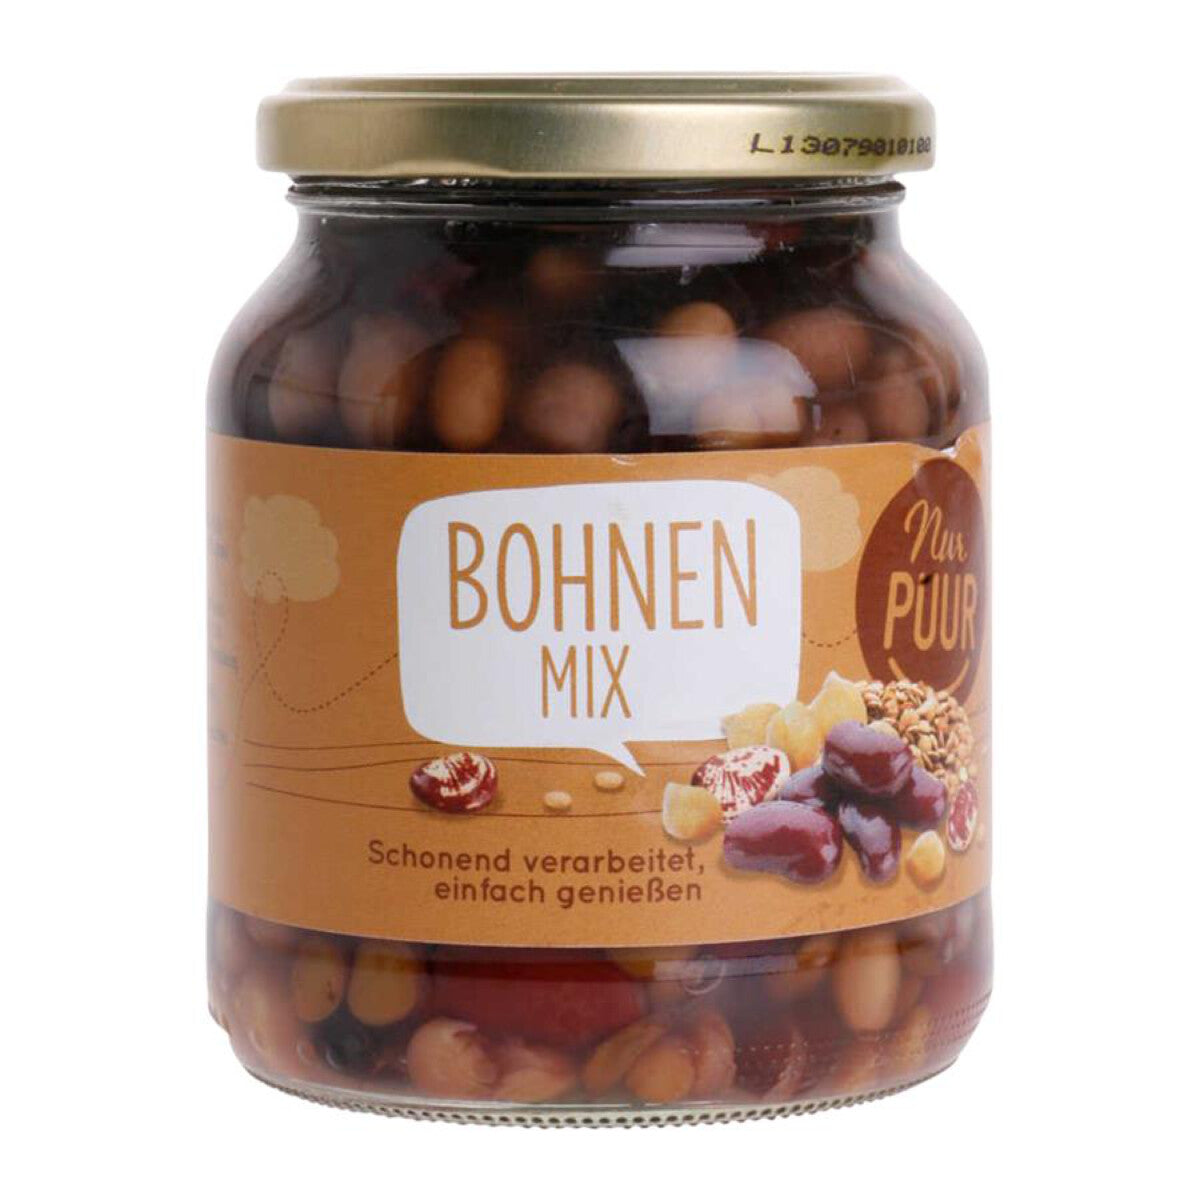 NUR PUUR Bohnen Mix - 350 g